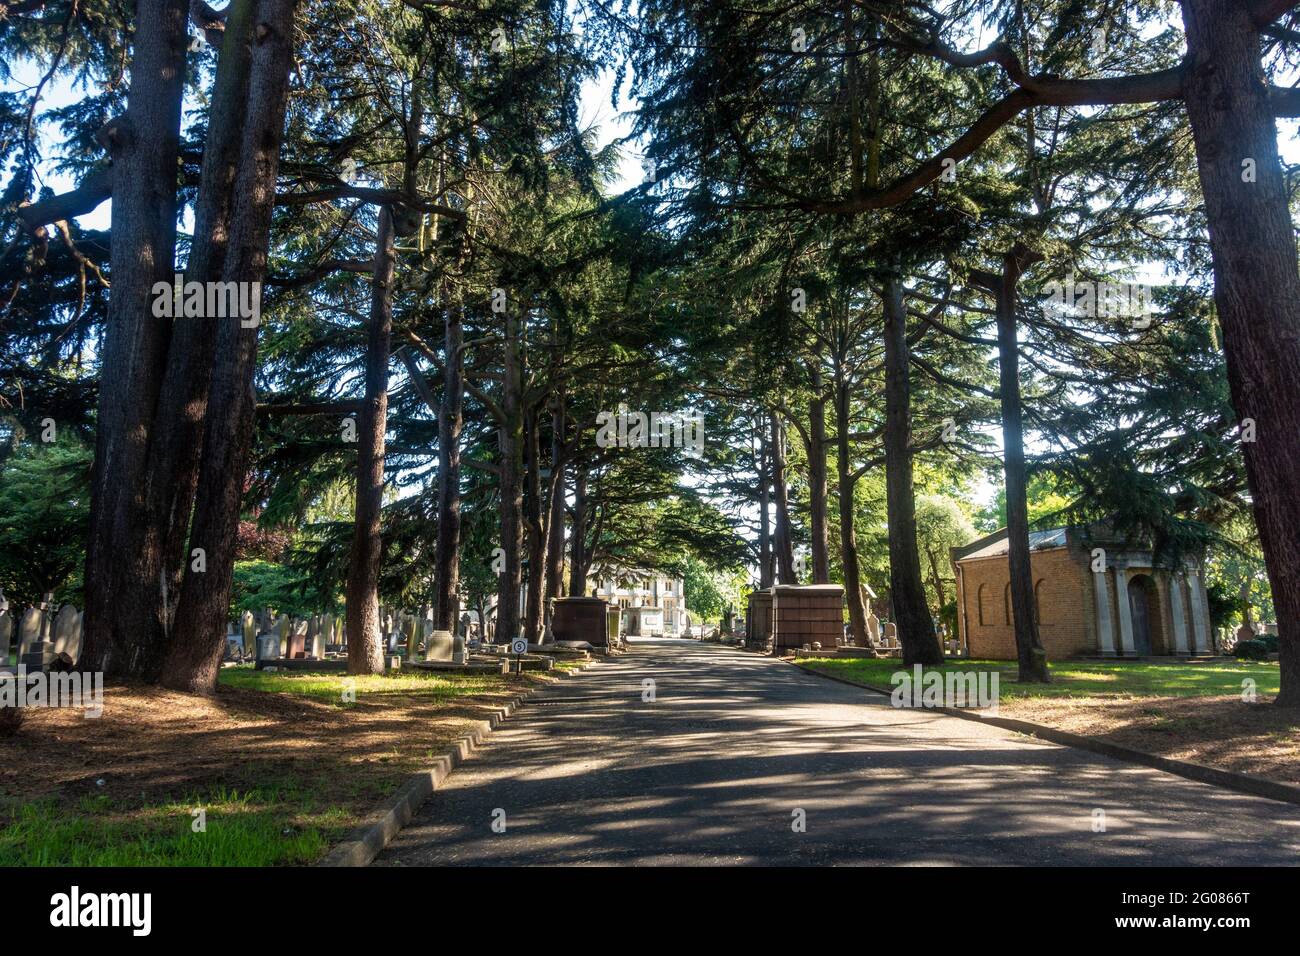 Die Straße, die in den Friedhof Hanwell führt, ist von hohen Bäumen gesäumt und ruhig und friedlich. Stockfoto